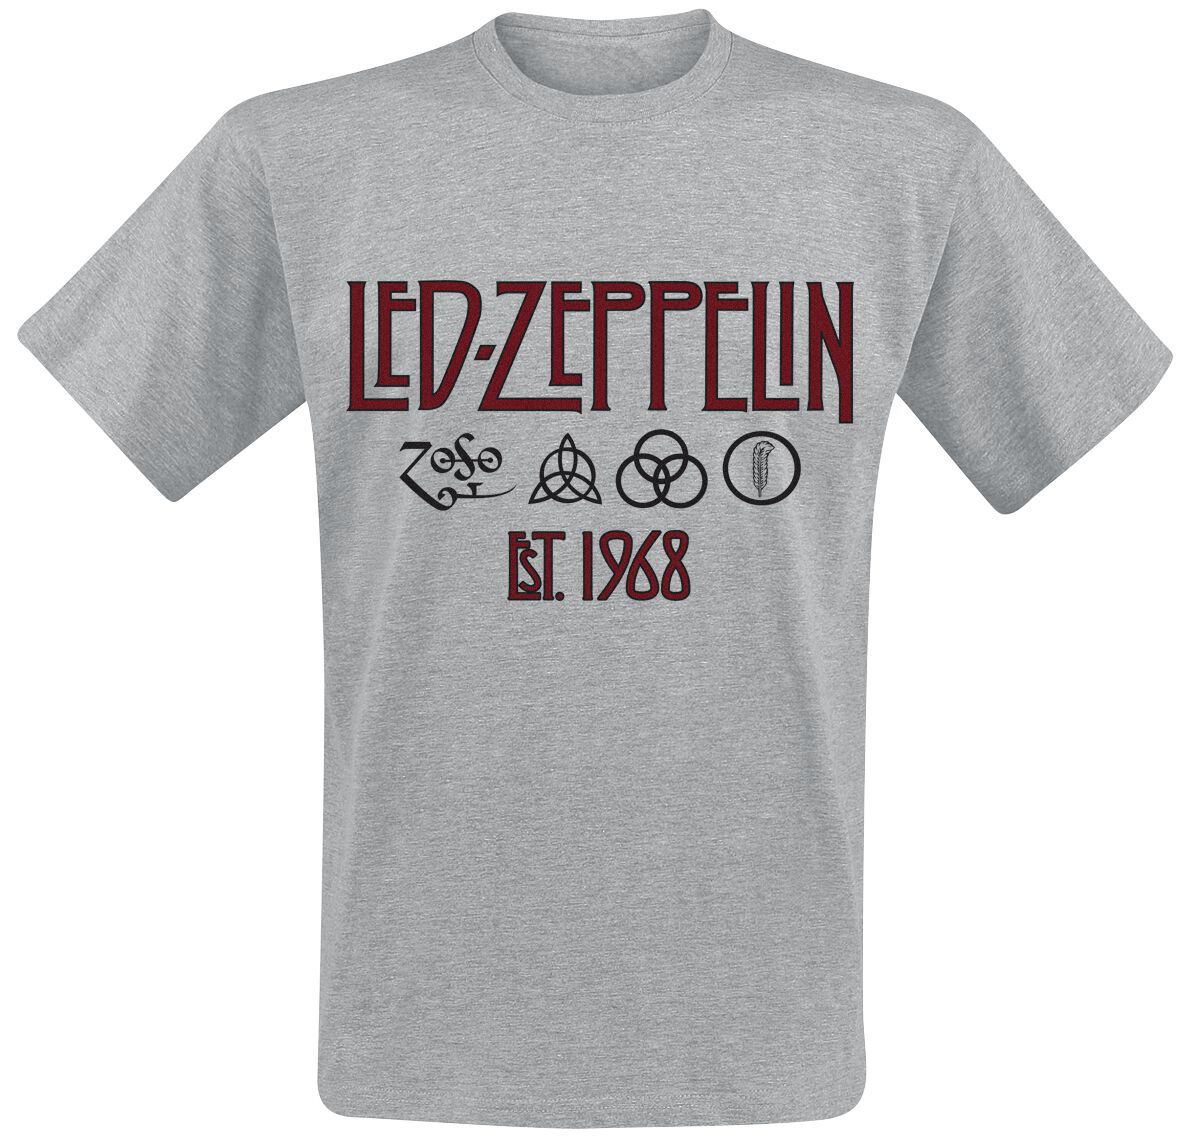 Led Zeppelin T-Shirt - Symbols Est. 1968 - M bis 3XL - für Männer - Größe 3XL - grau meliert  - Lizenziertes Merchandise!